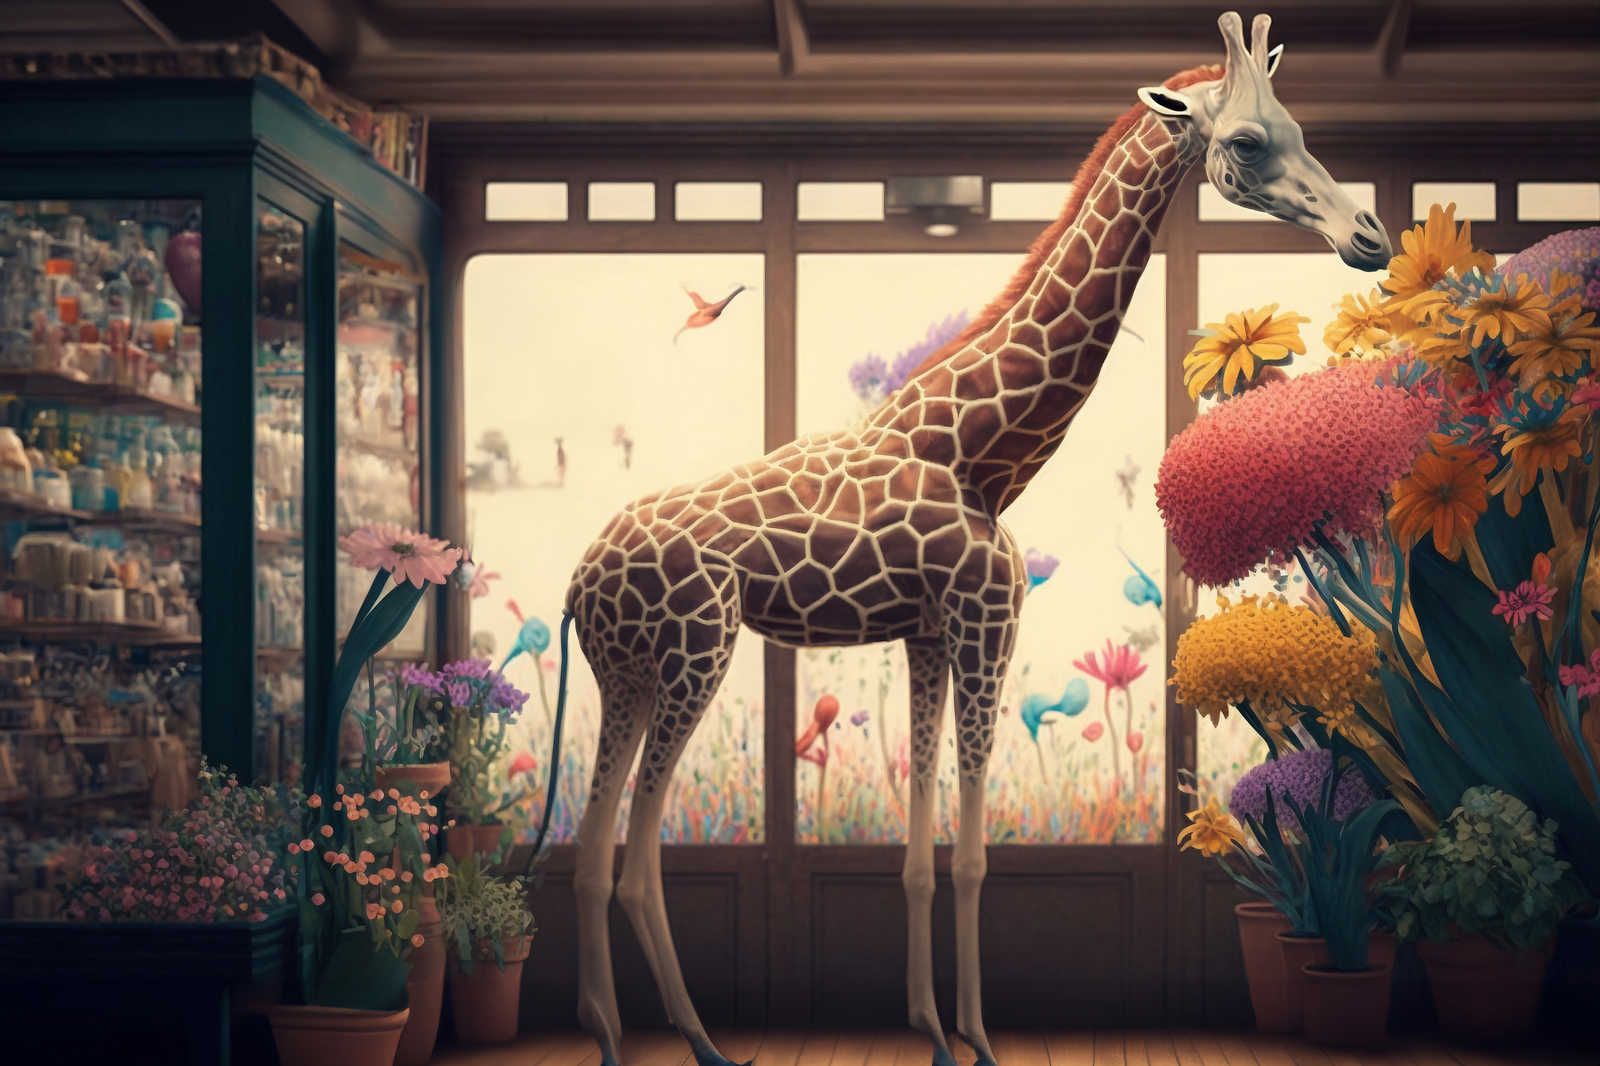             Toile KI »flower giraffe« - 90 cm x 60 cm
        